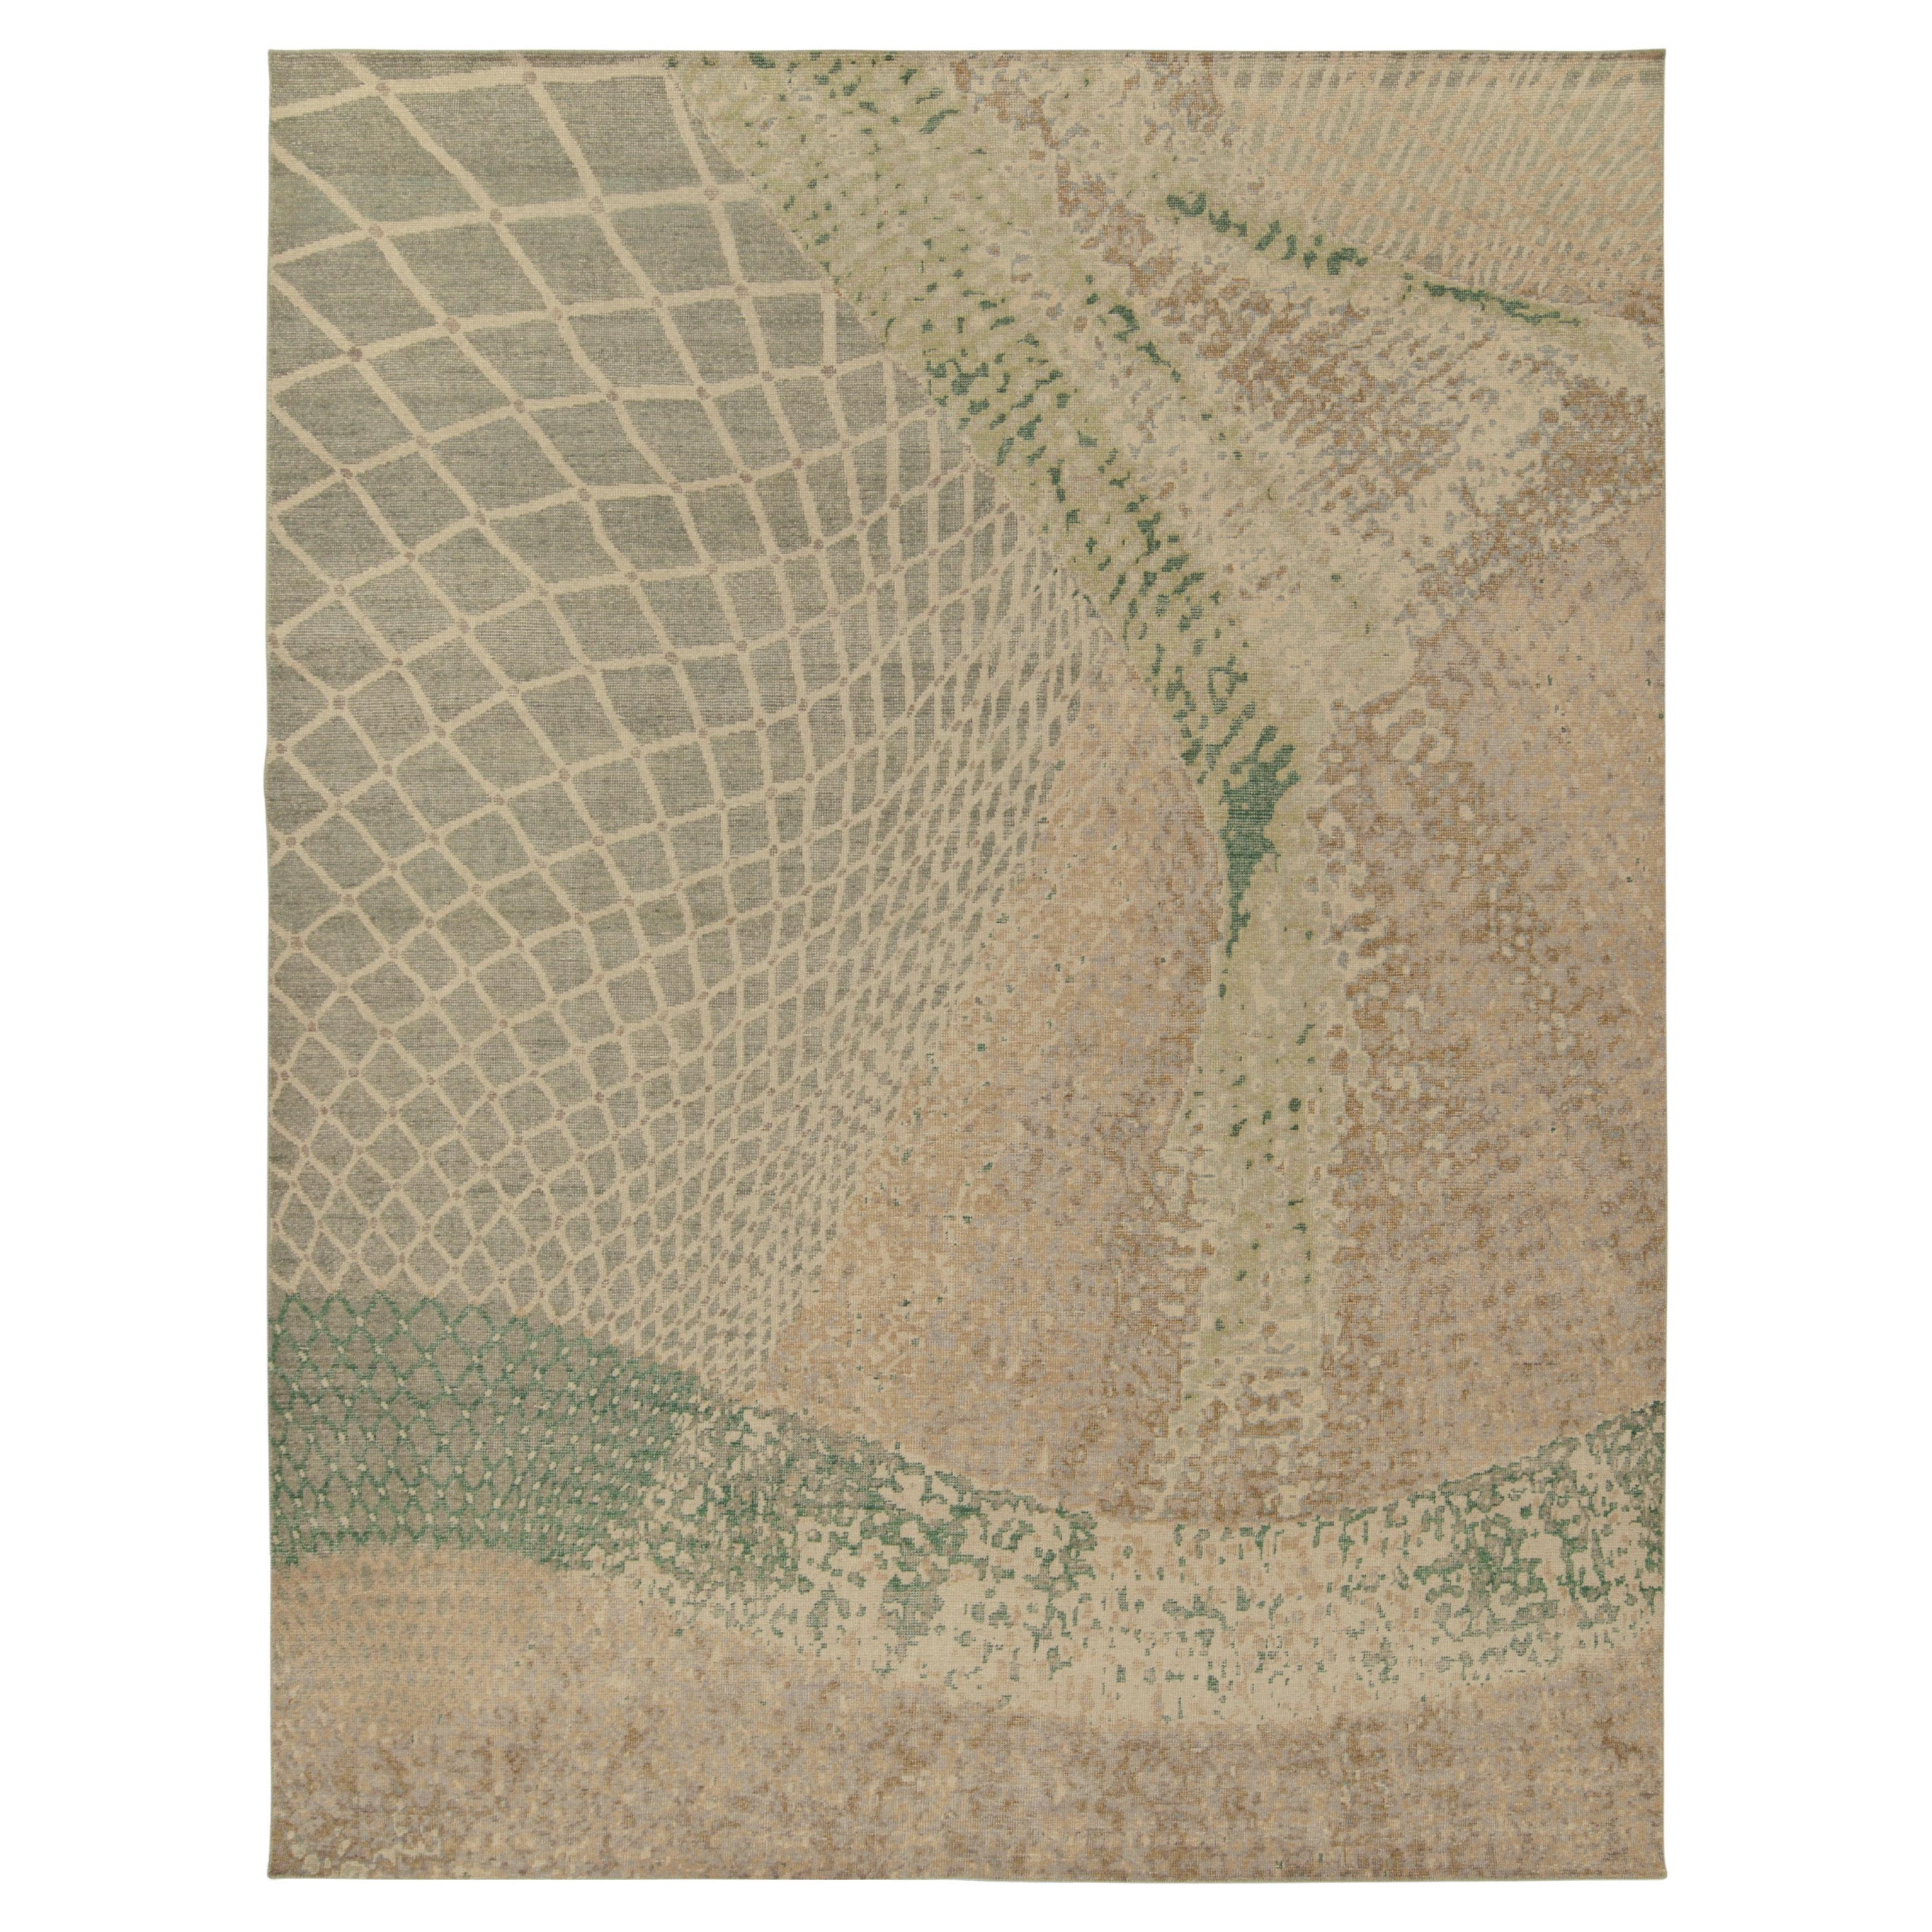 Rug & Kilim's Distressed Style Modern Rug in Beige, Green Abstract Pattern (Tapis moderne en beige, motif abstrait vert)